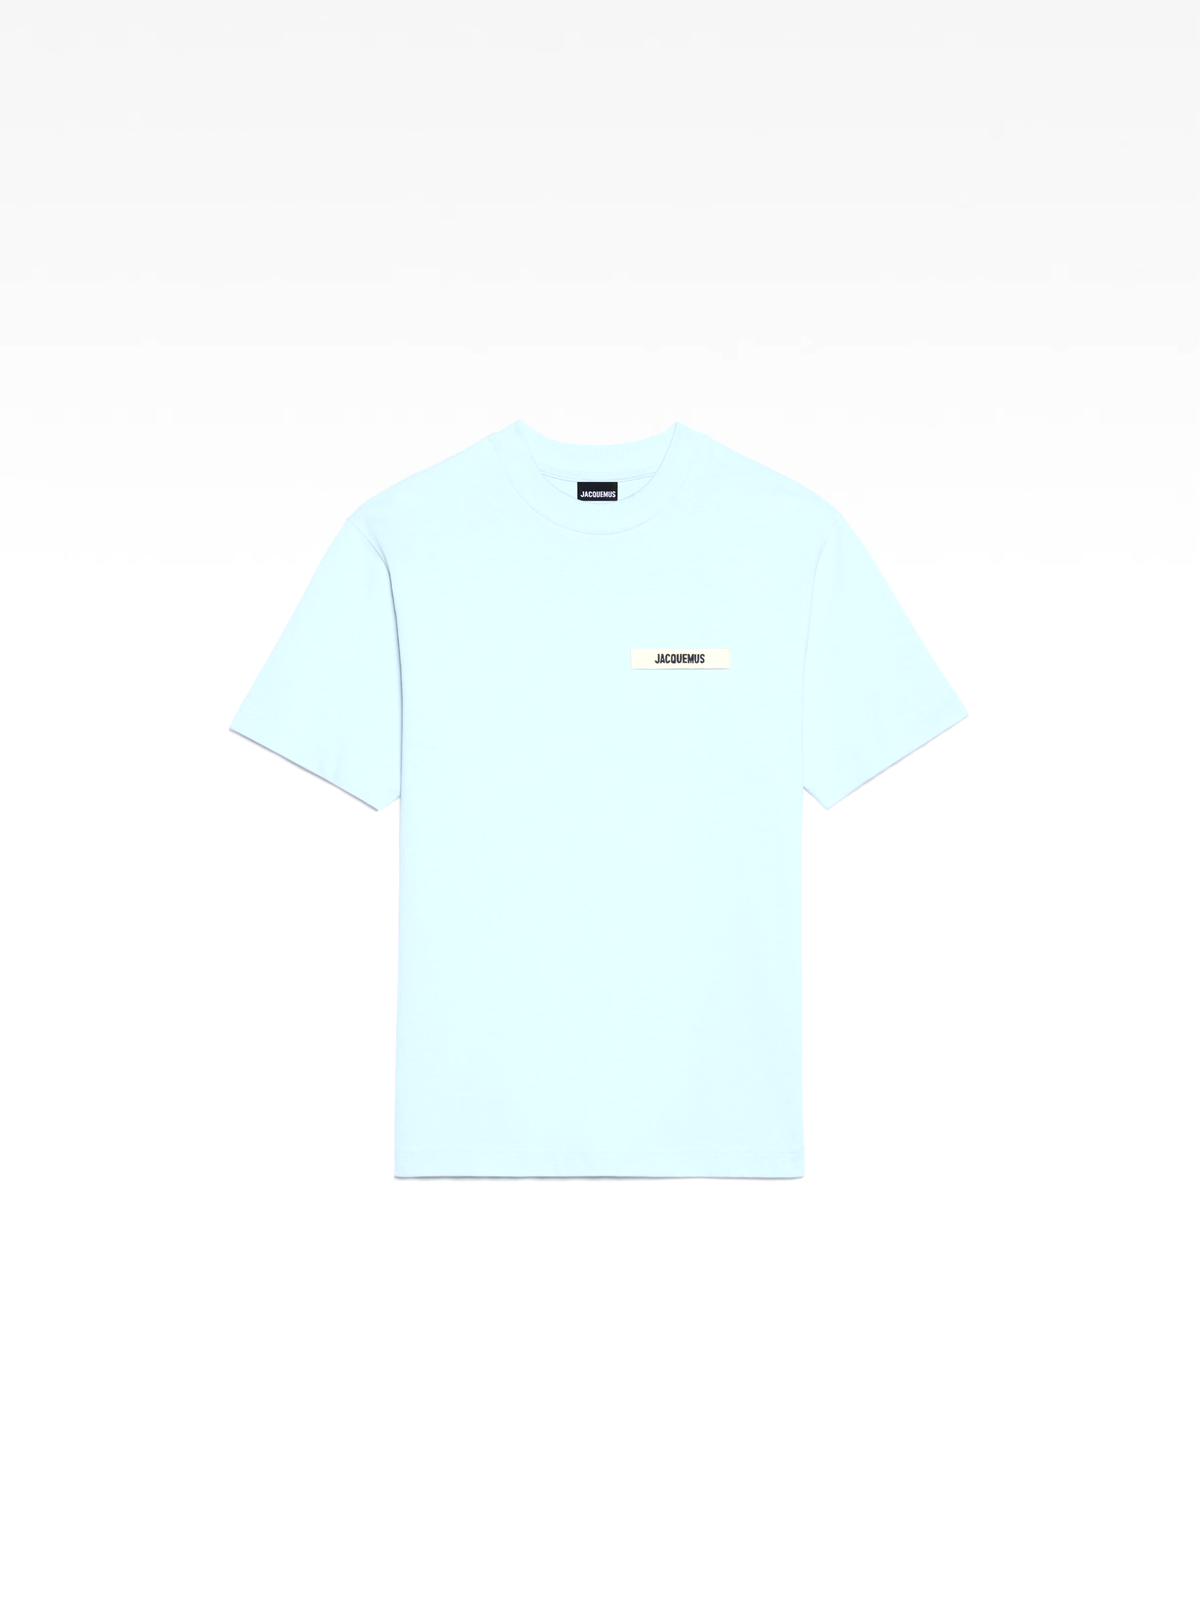 Le t-shirt Gros Grain - light blue